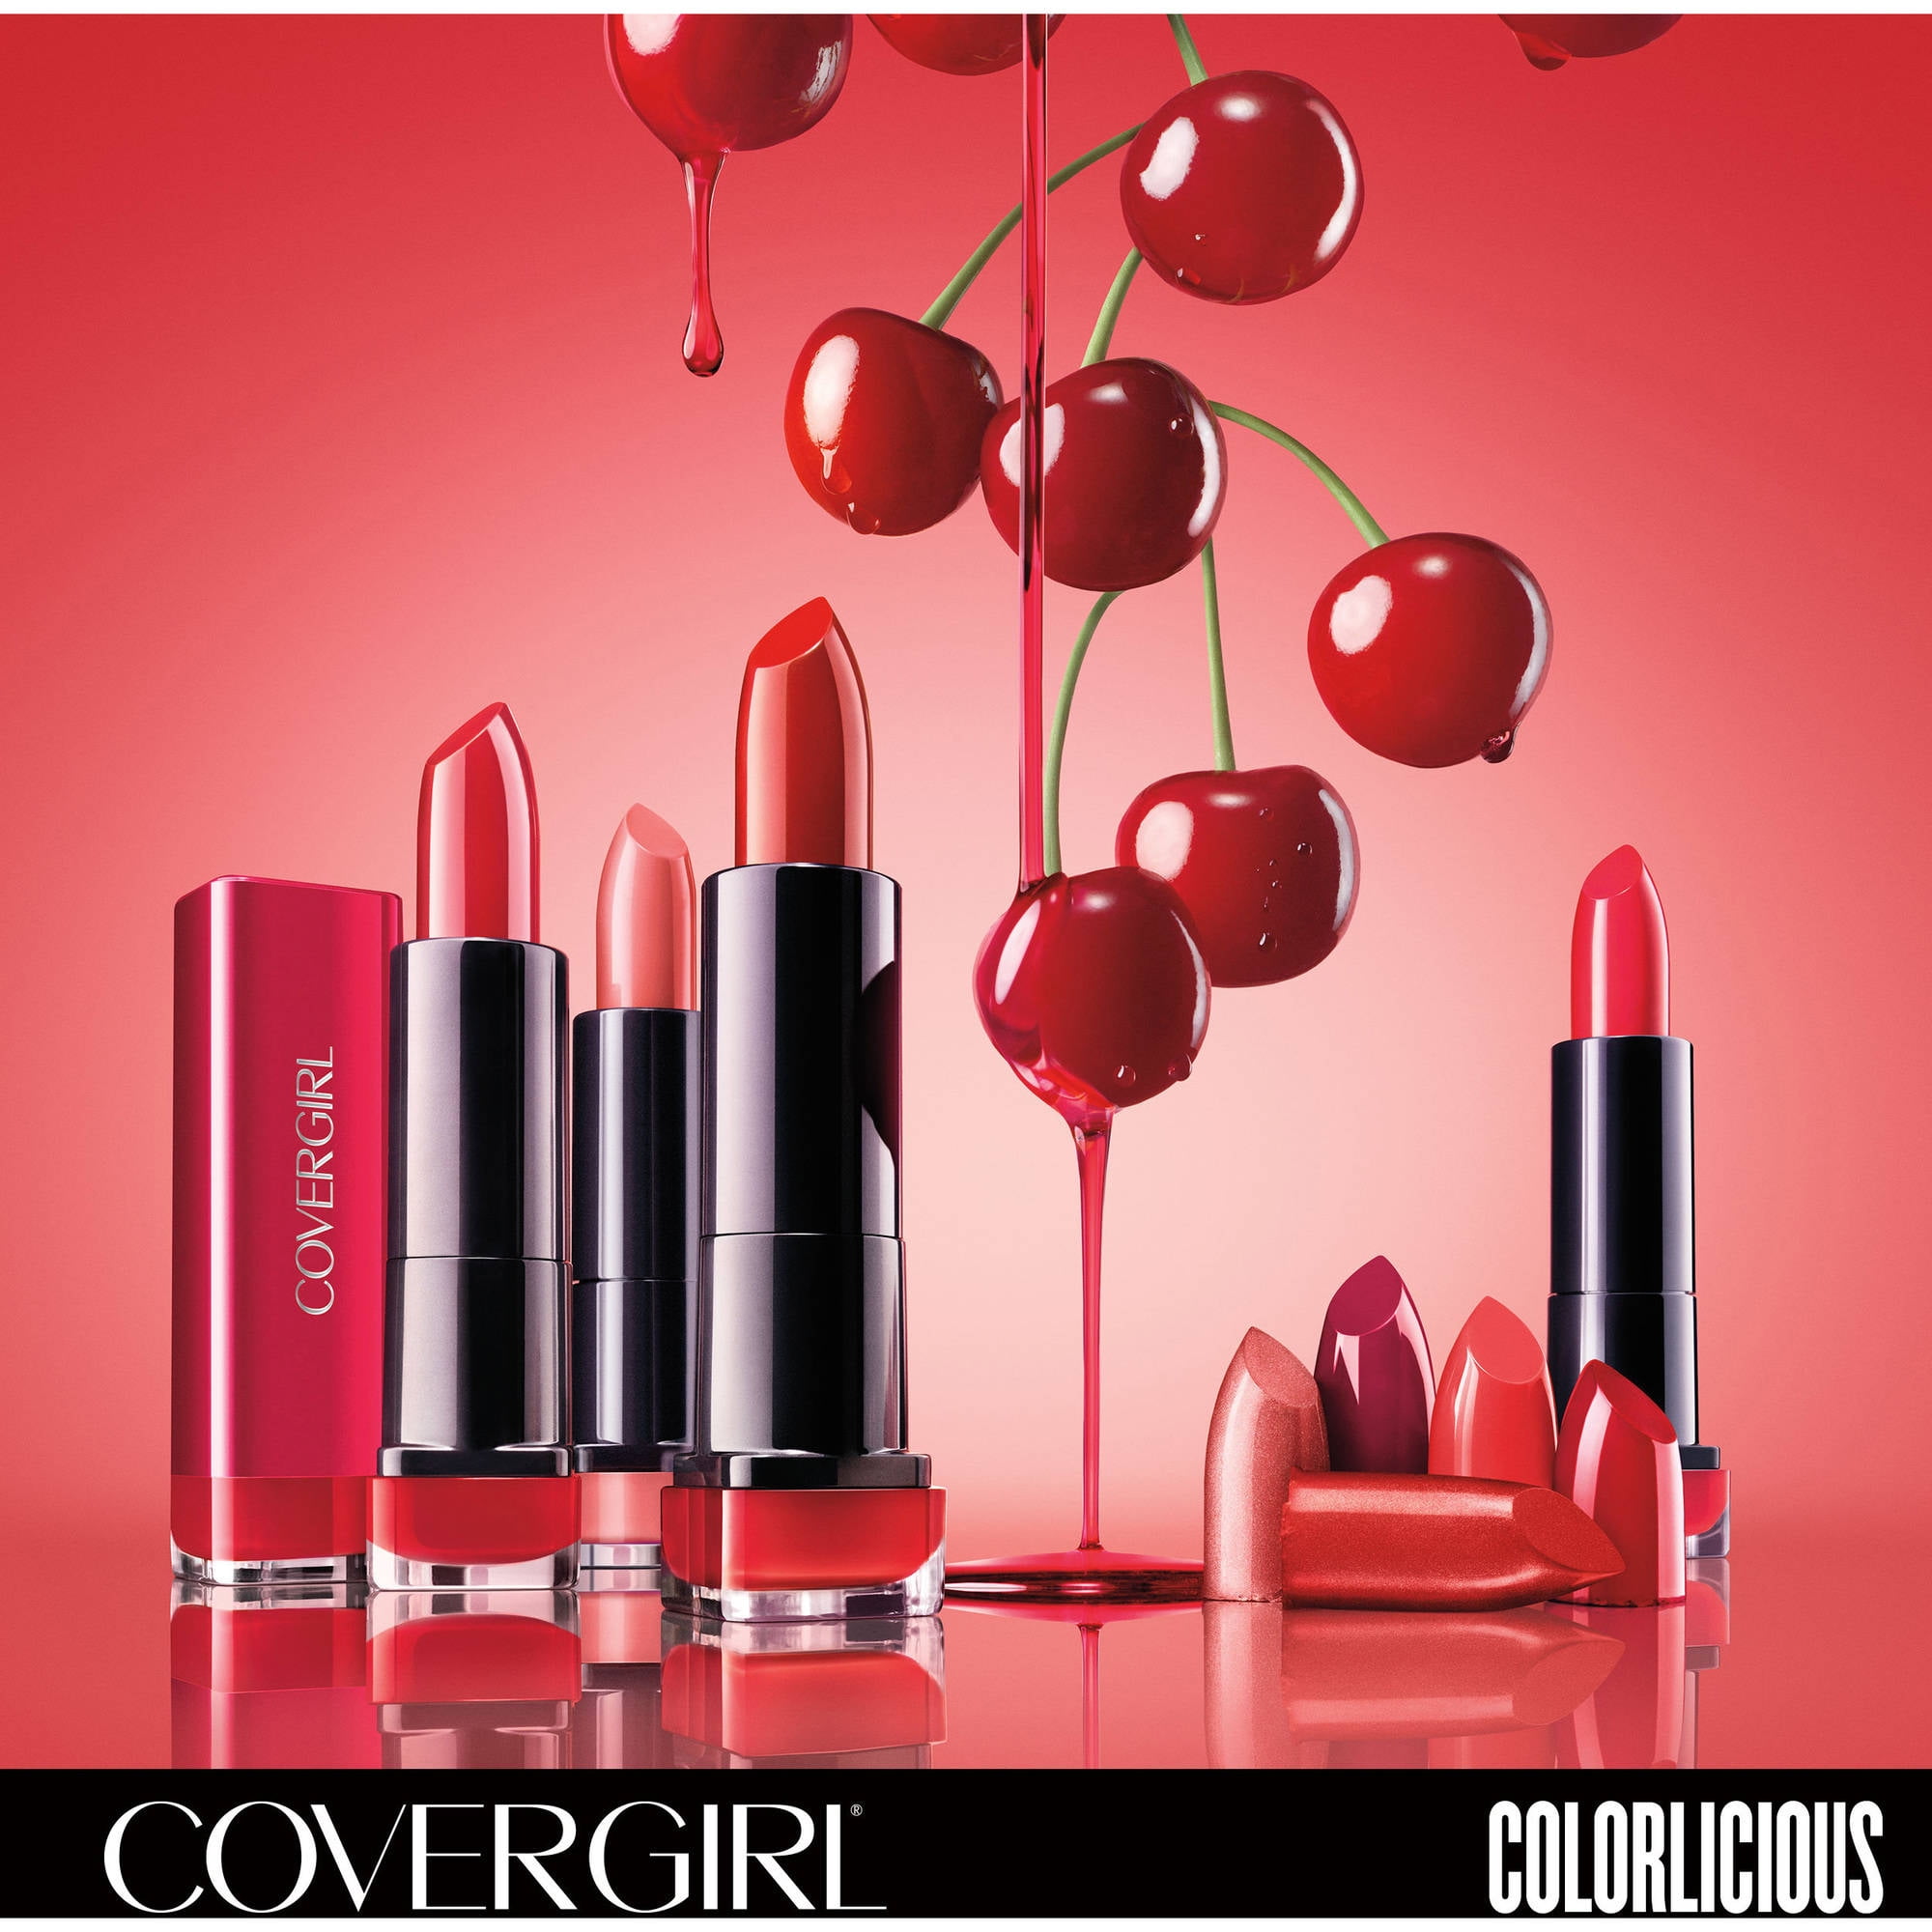 Exhibitionist Lipstick, Garnet Flame - Walmart.com